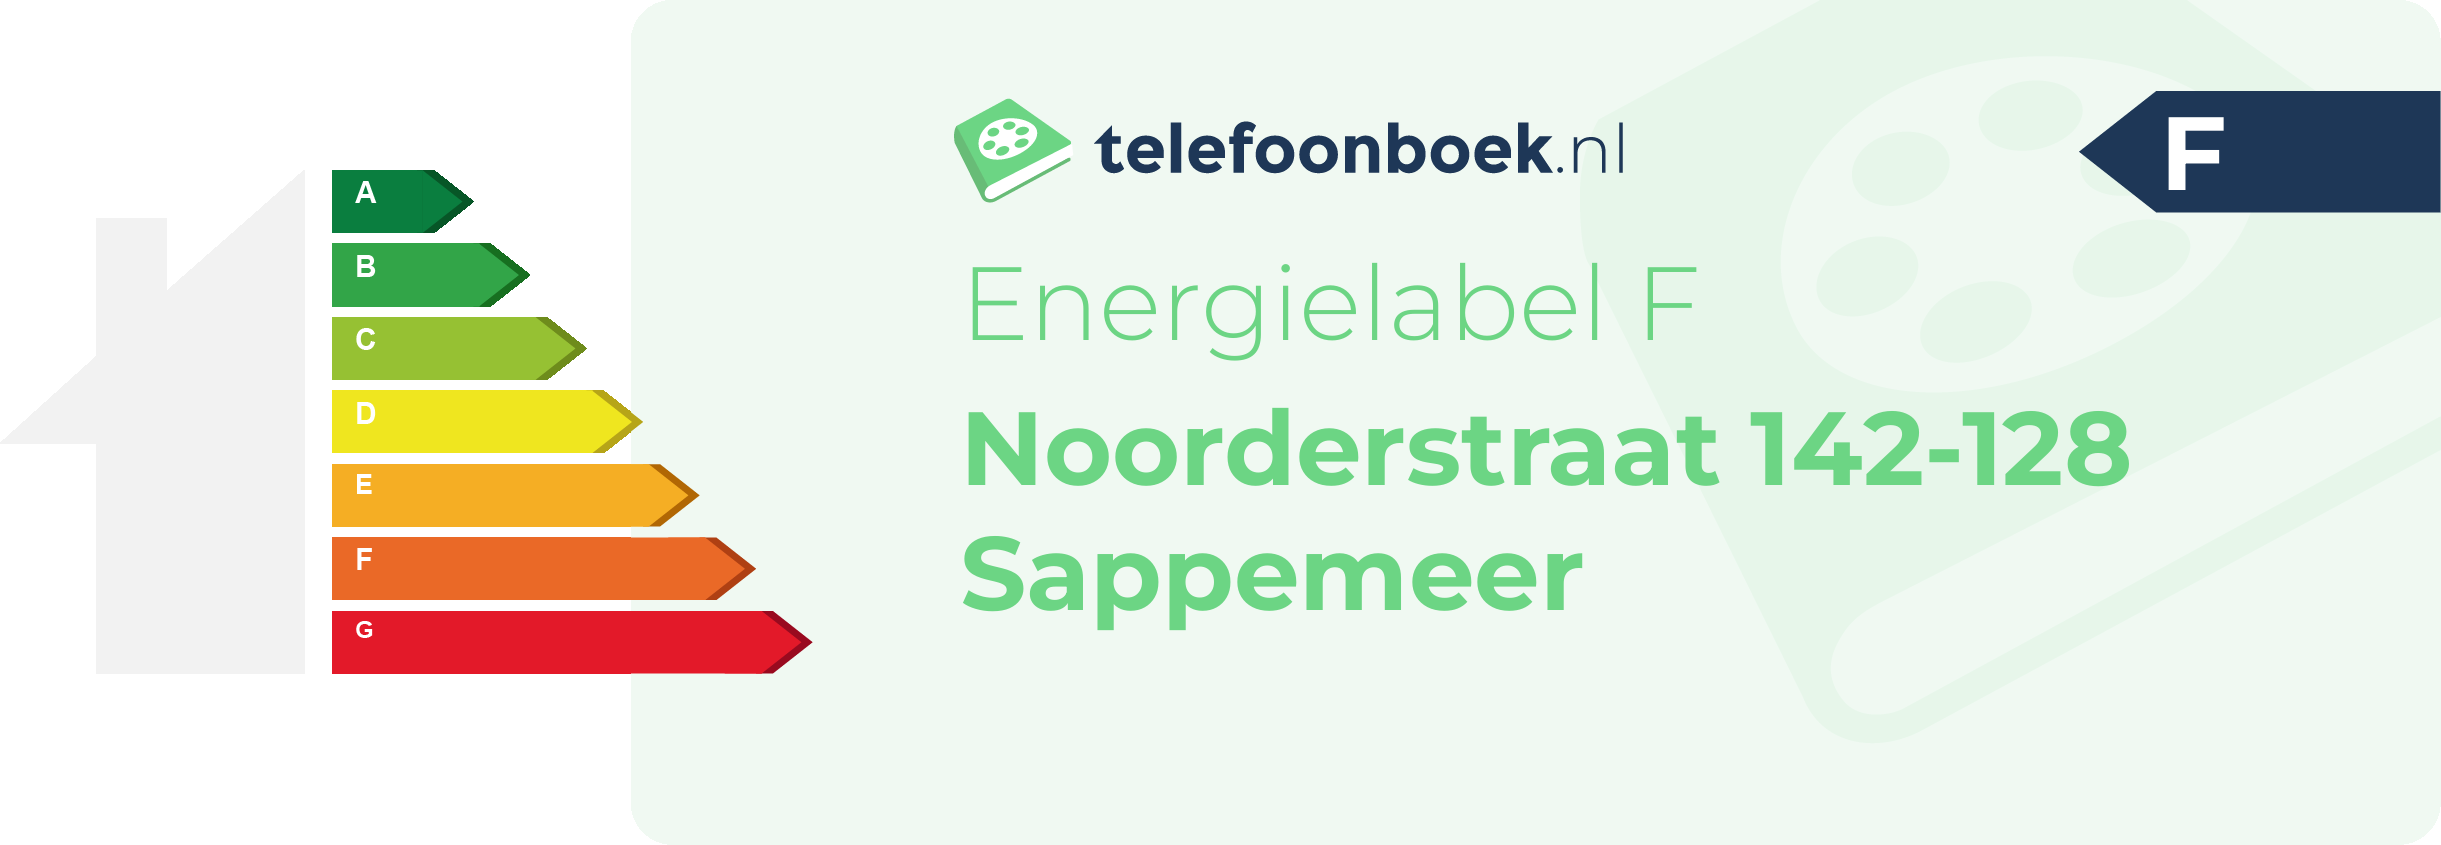 Energielabel Noorderstraat 142-128 Sappemeer